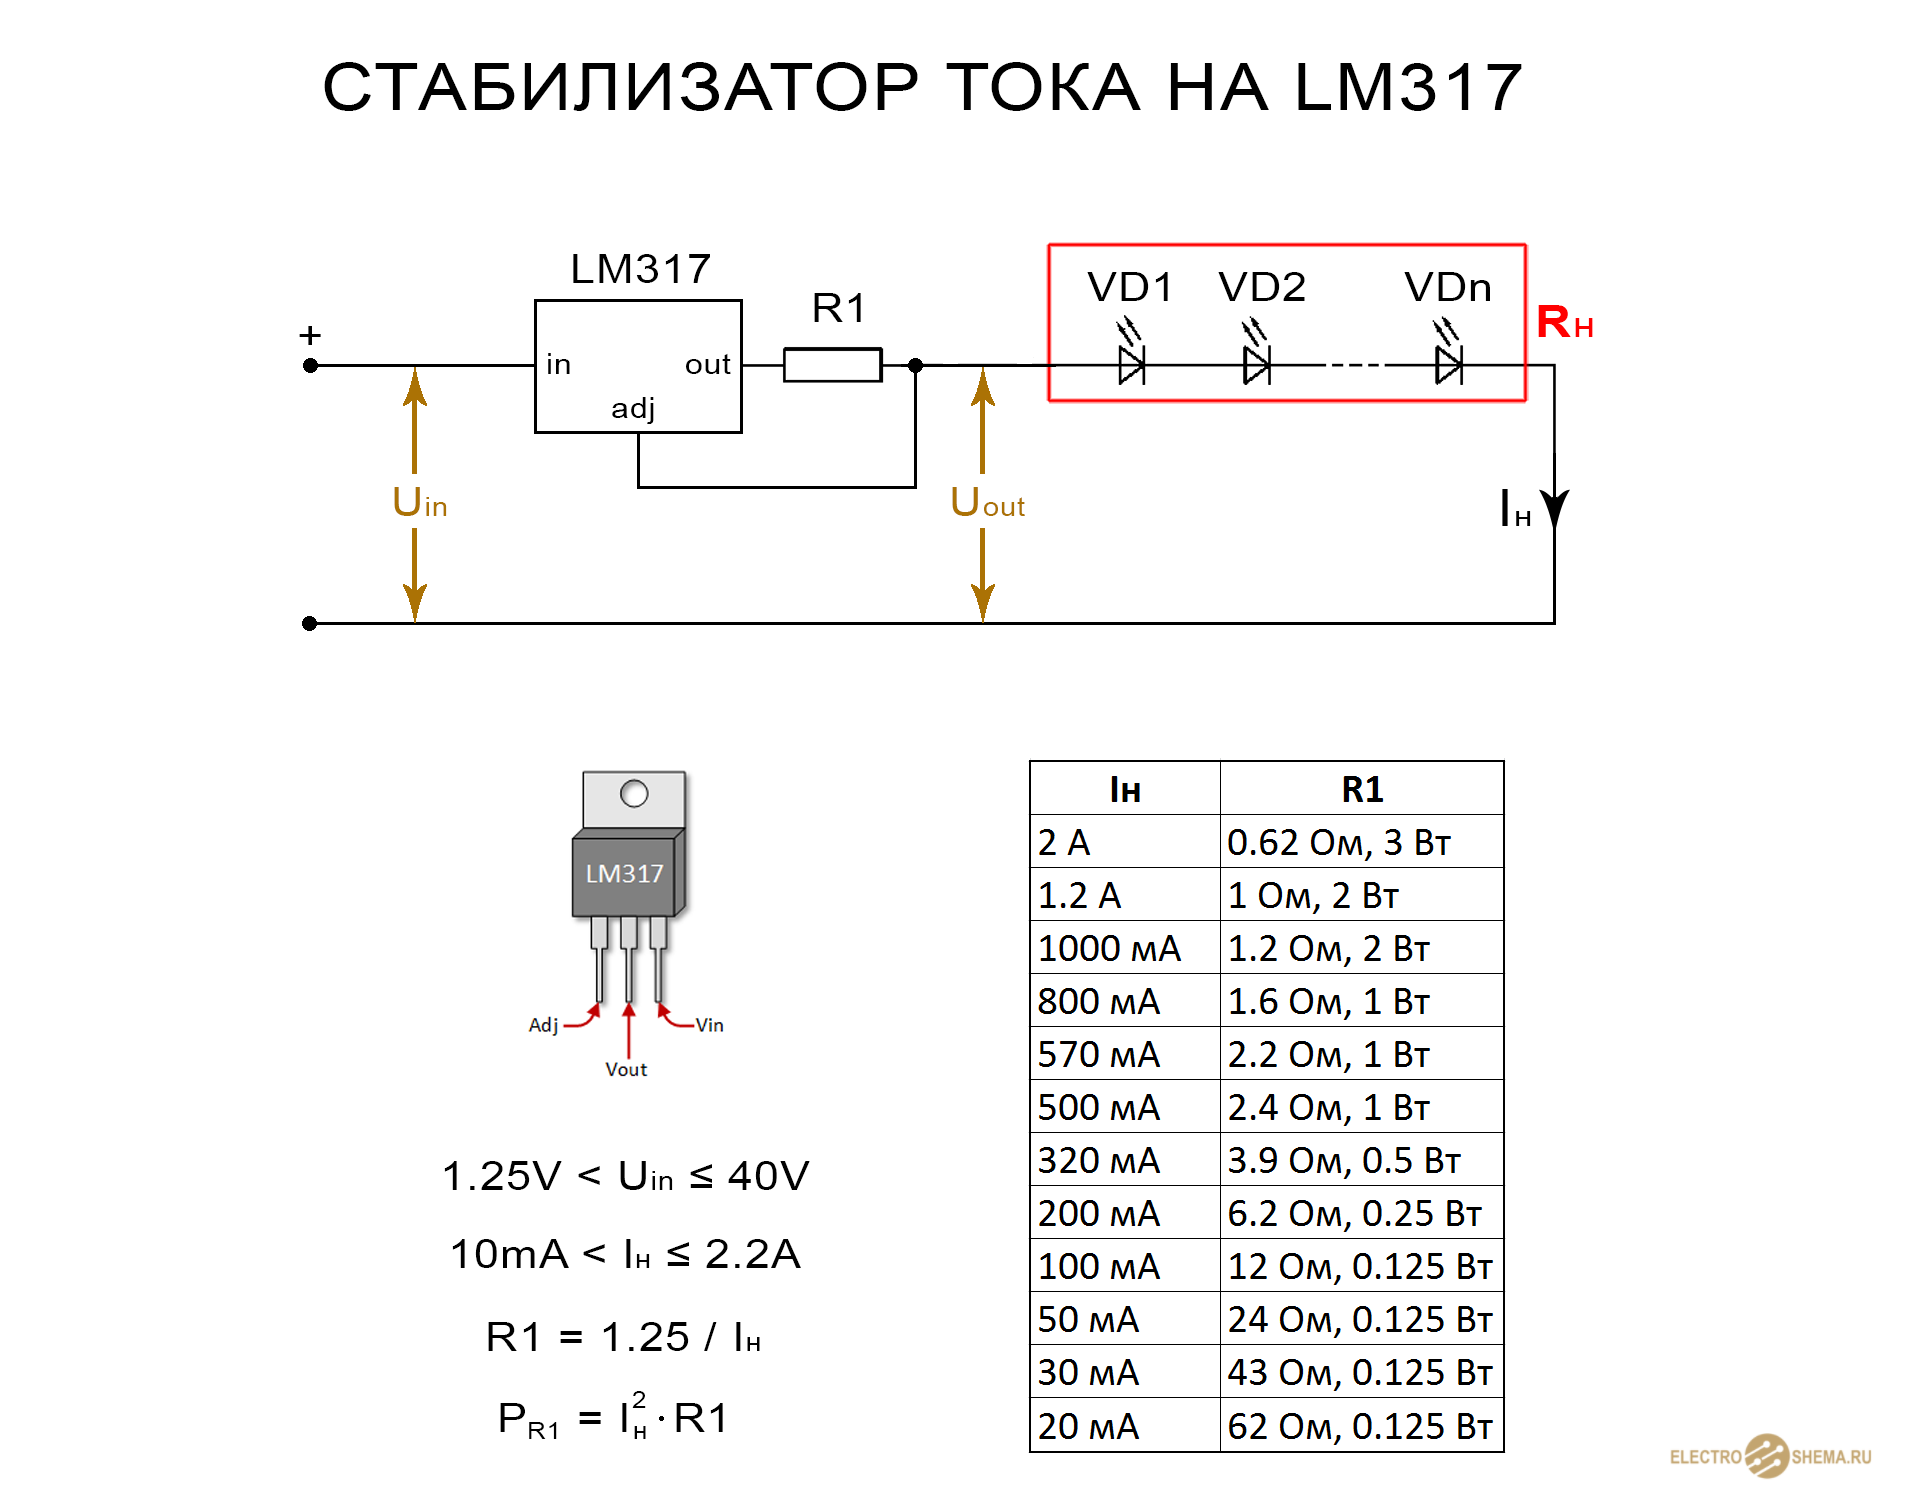 Схемотехническое решение микросхемы LM317 Параметры микросхем LM-317 Изготовление стабилизатора на LM-317 для светодиода своими руками Микросхема LM 317: стабилизатор тока для светодиодов в автомобиле